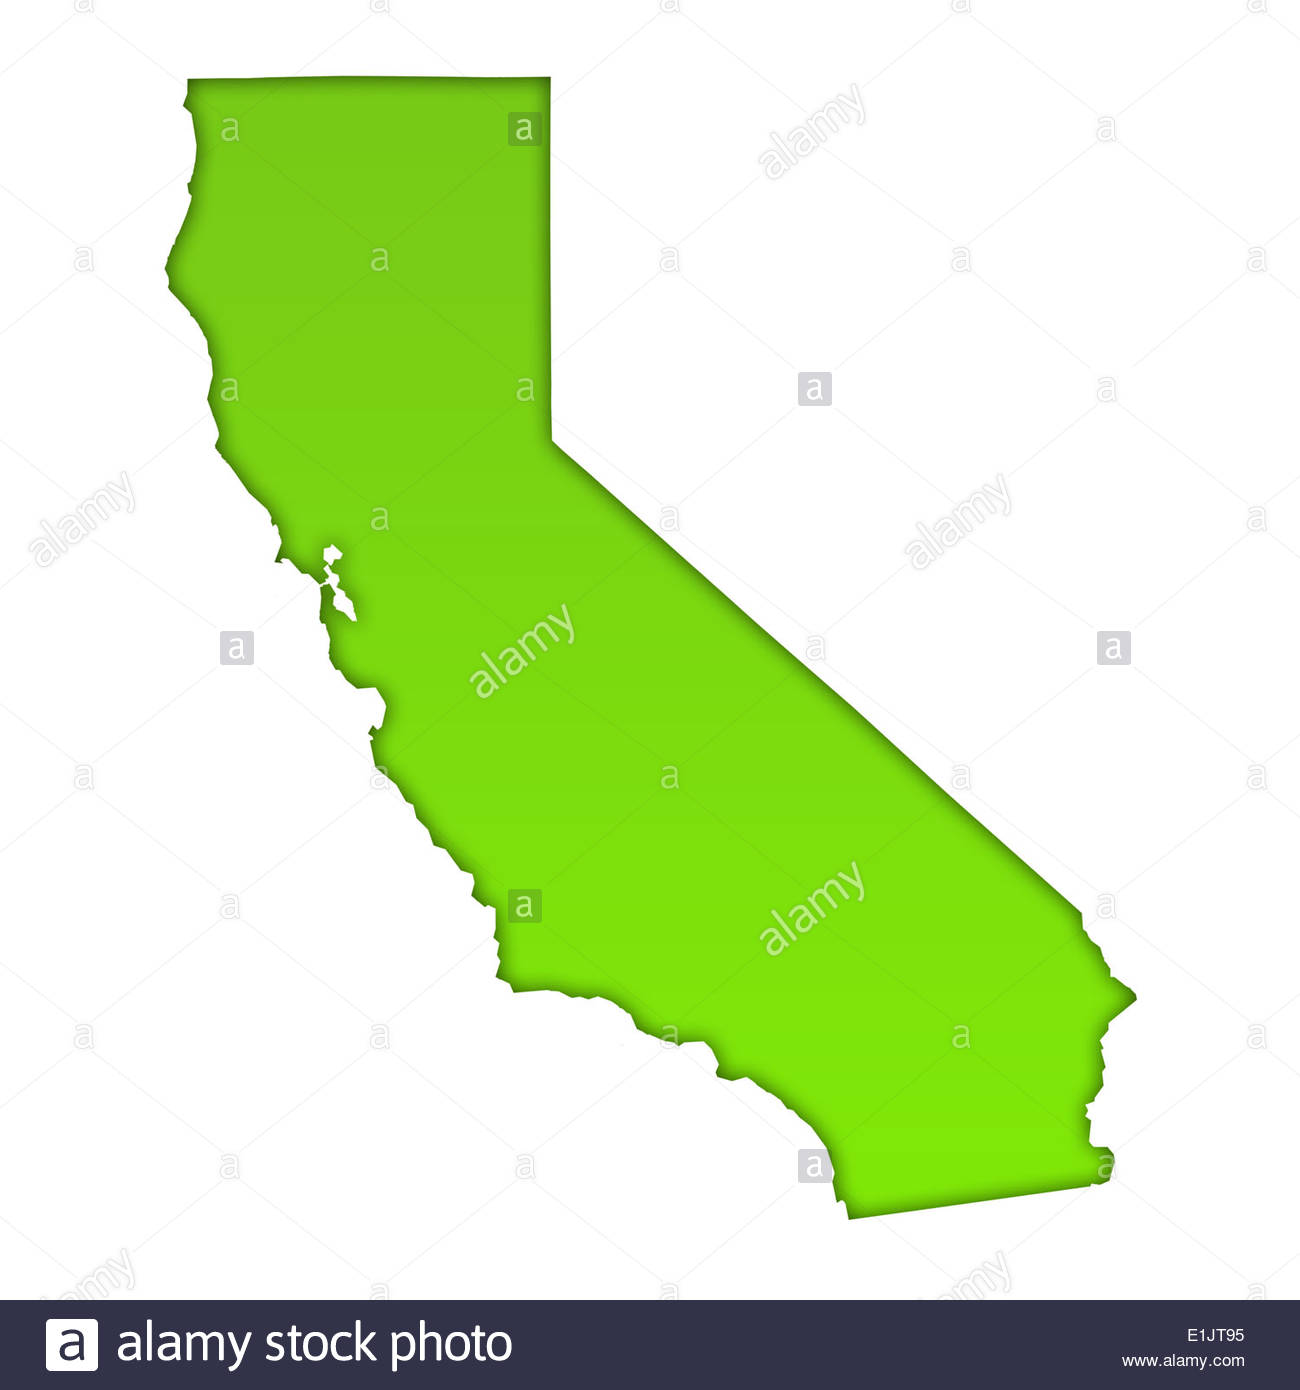 California icons | Noun Project